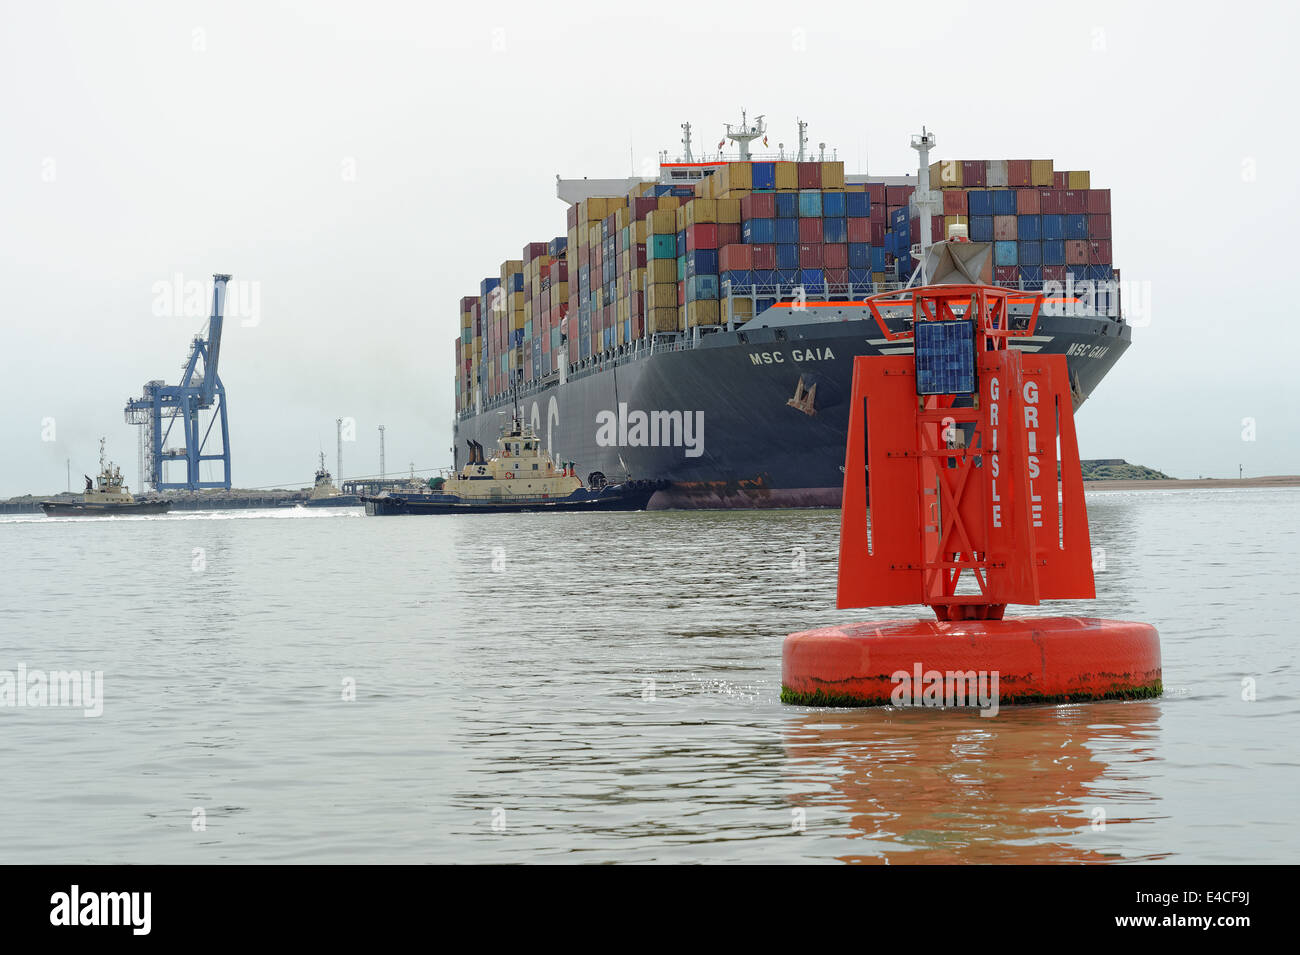 Les 151 000 tonnes de navires porte-conteneurs MSC Gaia être manoeuvré à l'aide de remorqueurs dans le terminal à conteneurs de Felixstowe (Royaume-Uni). Banque D'Images